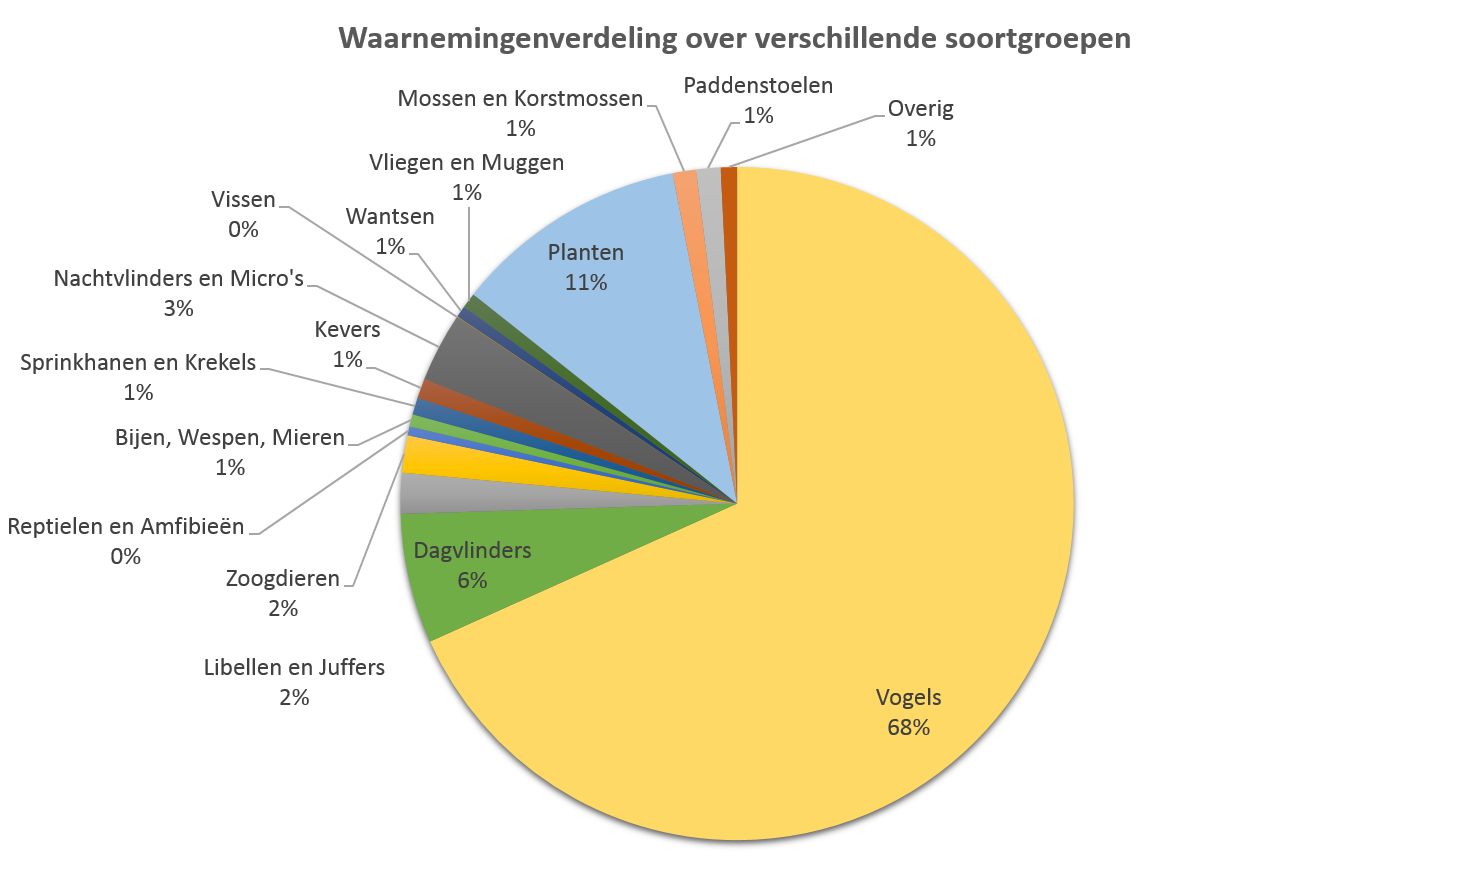 Waarnemingenverdeling over de verschillende soortgroepen (Bron: waarneming.nl, 26 december 2016)